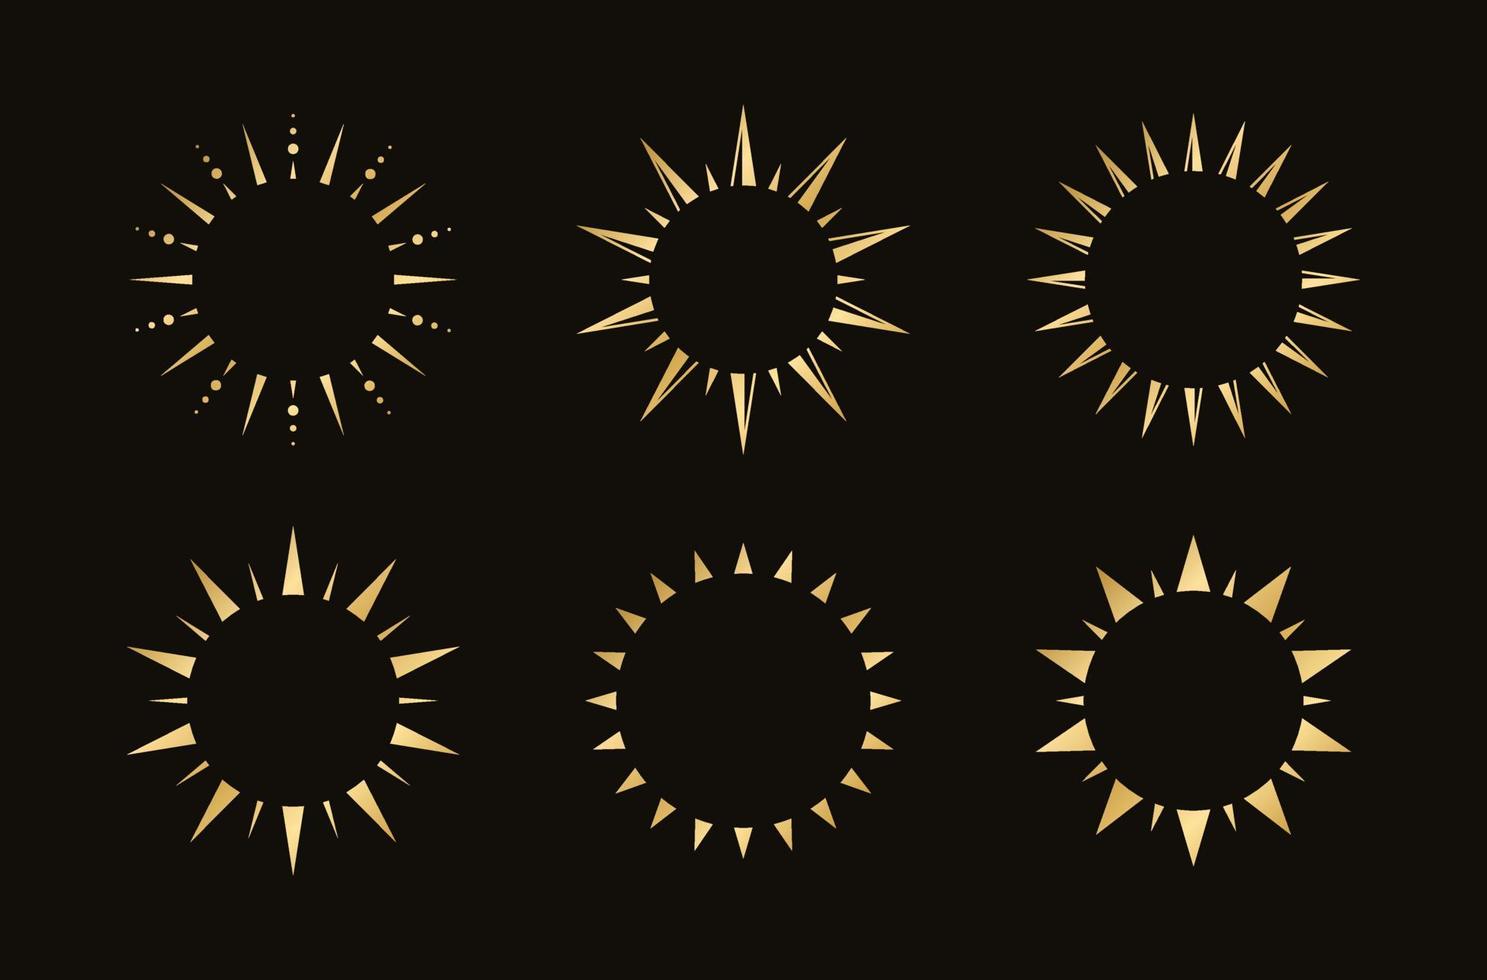 dorado boho celestial Dom rayos marco colocar. sencillo moderno resumen diseño para plantillas, huellas dactilares, web, social medios de comunicación publicaciones vector